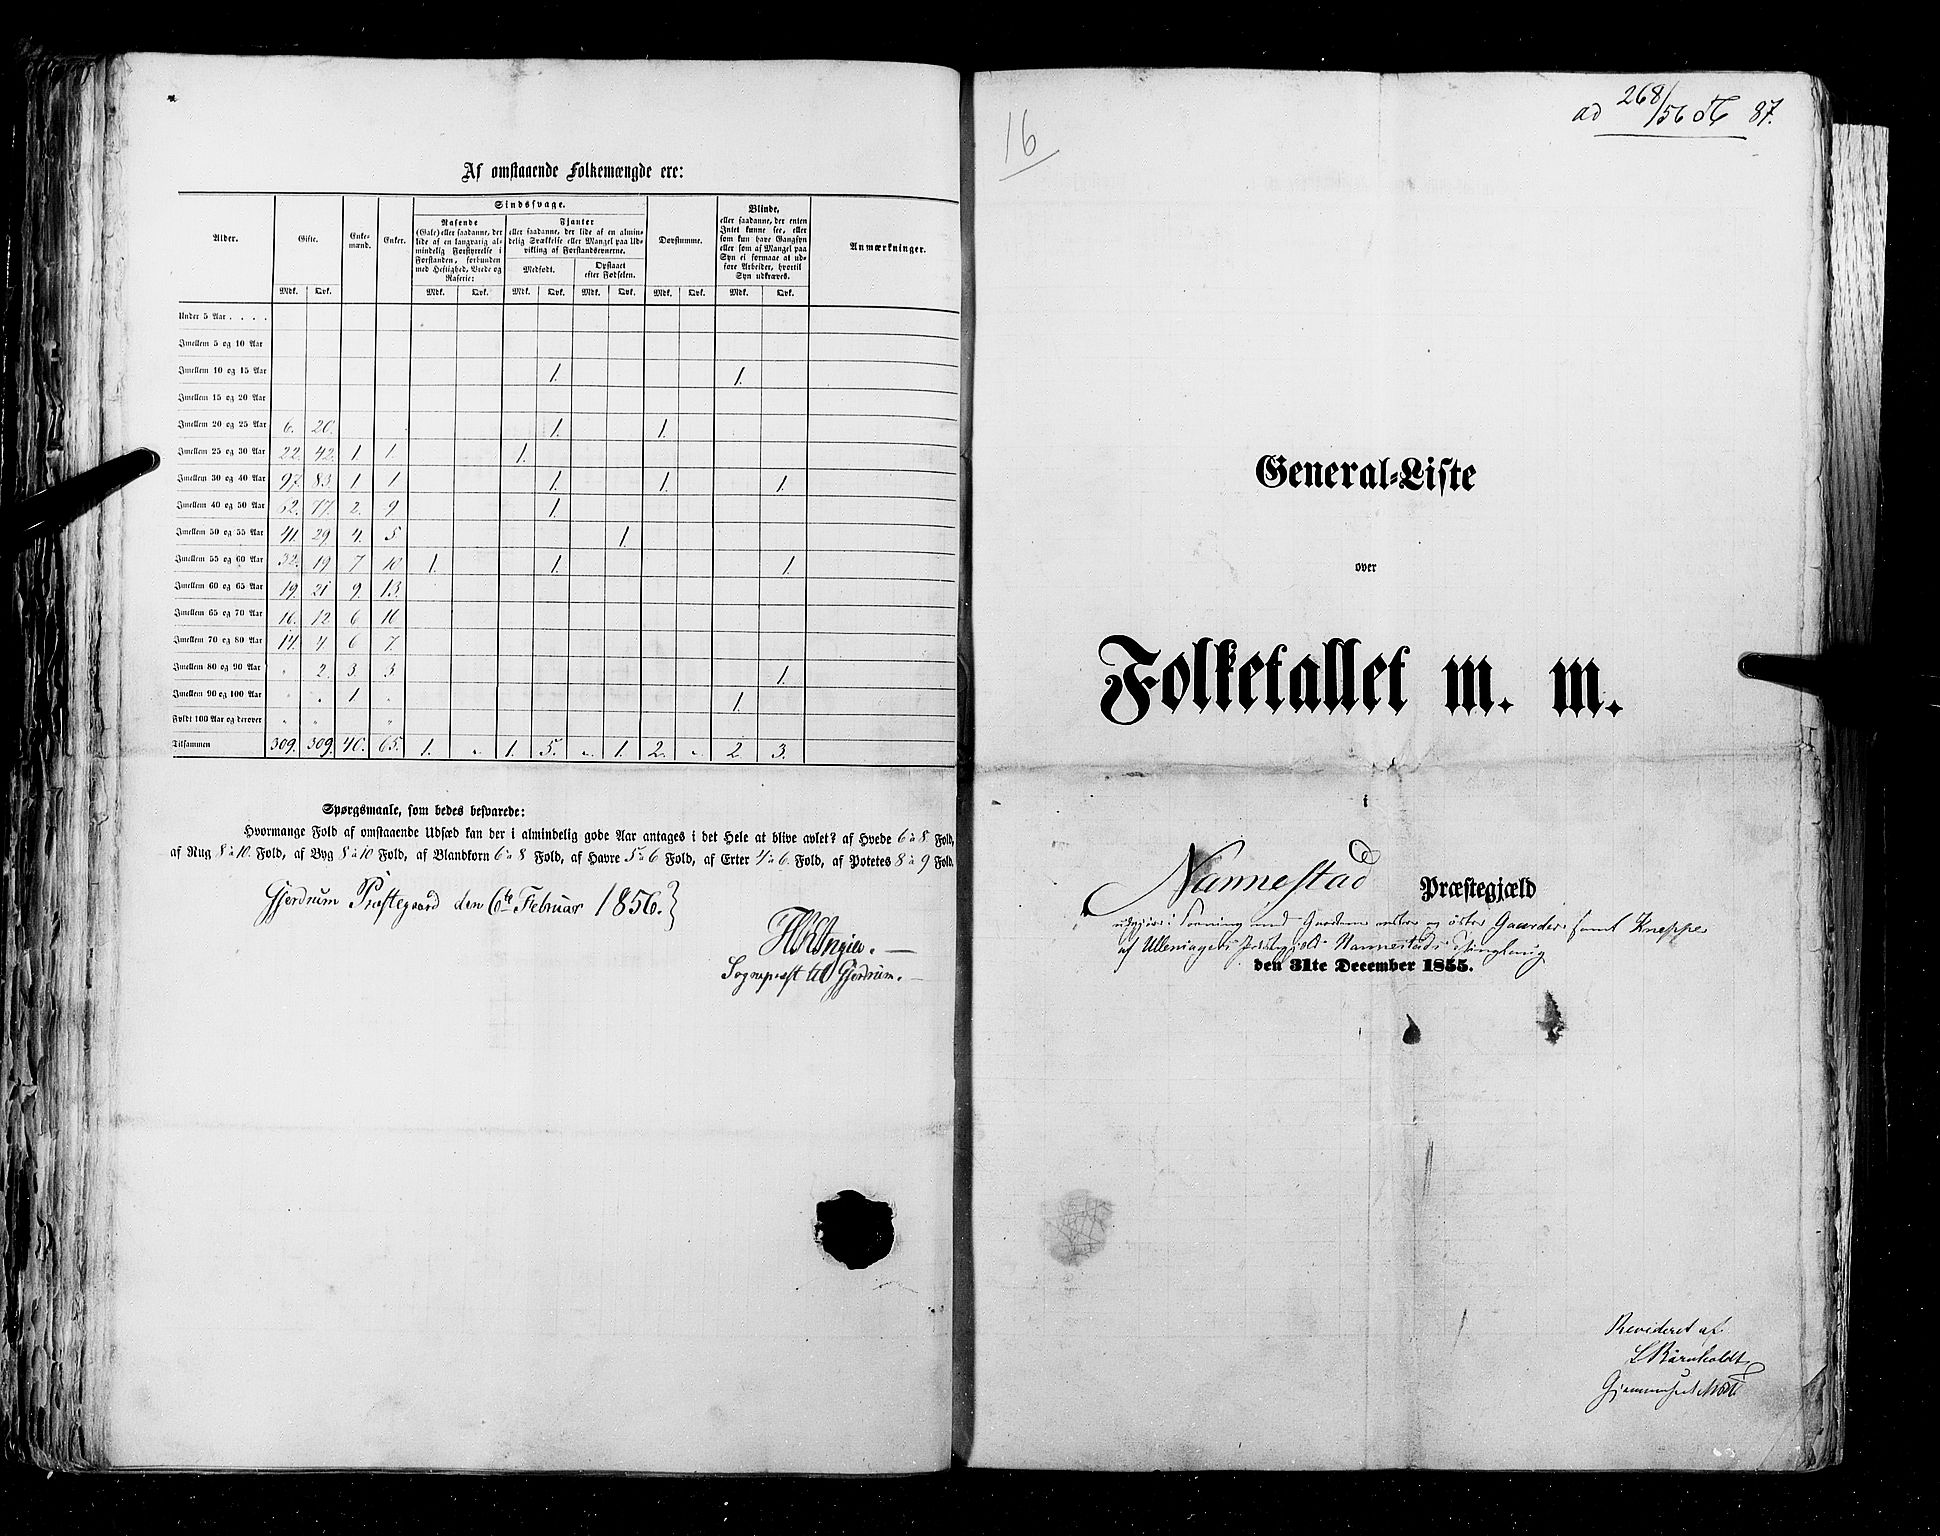 RA, Census 1855, vol. 1: Akershus amt, Smålenenes amt og Hedemarken amt, 1855, p. 87